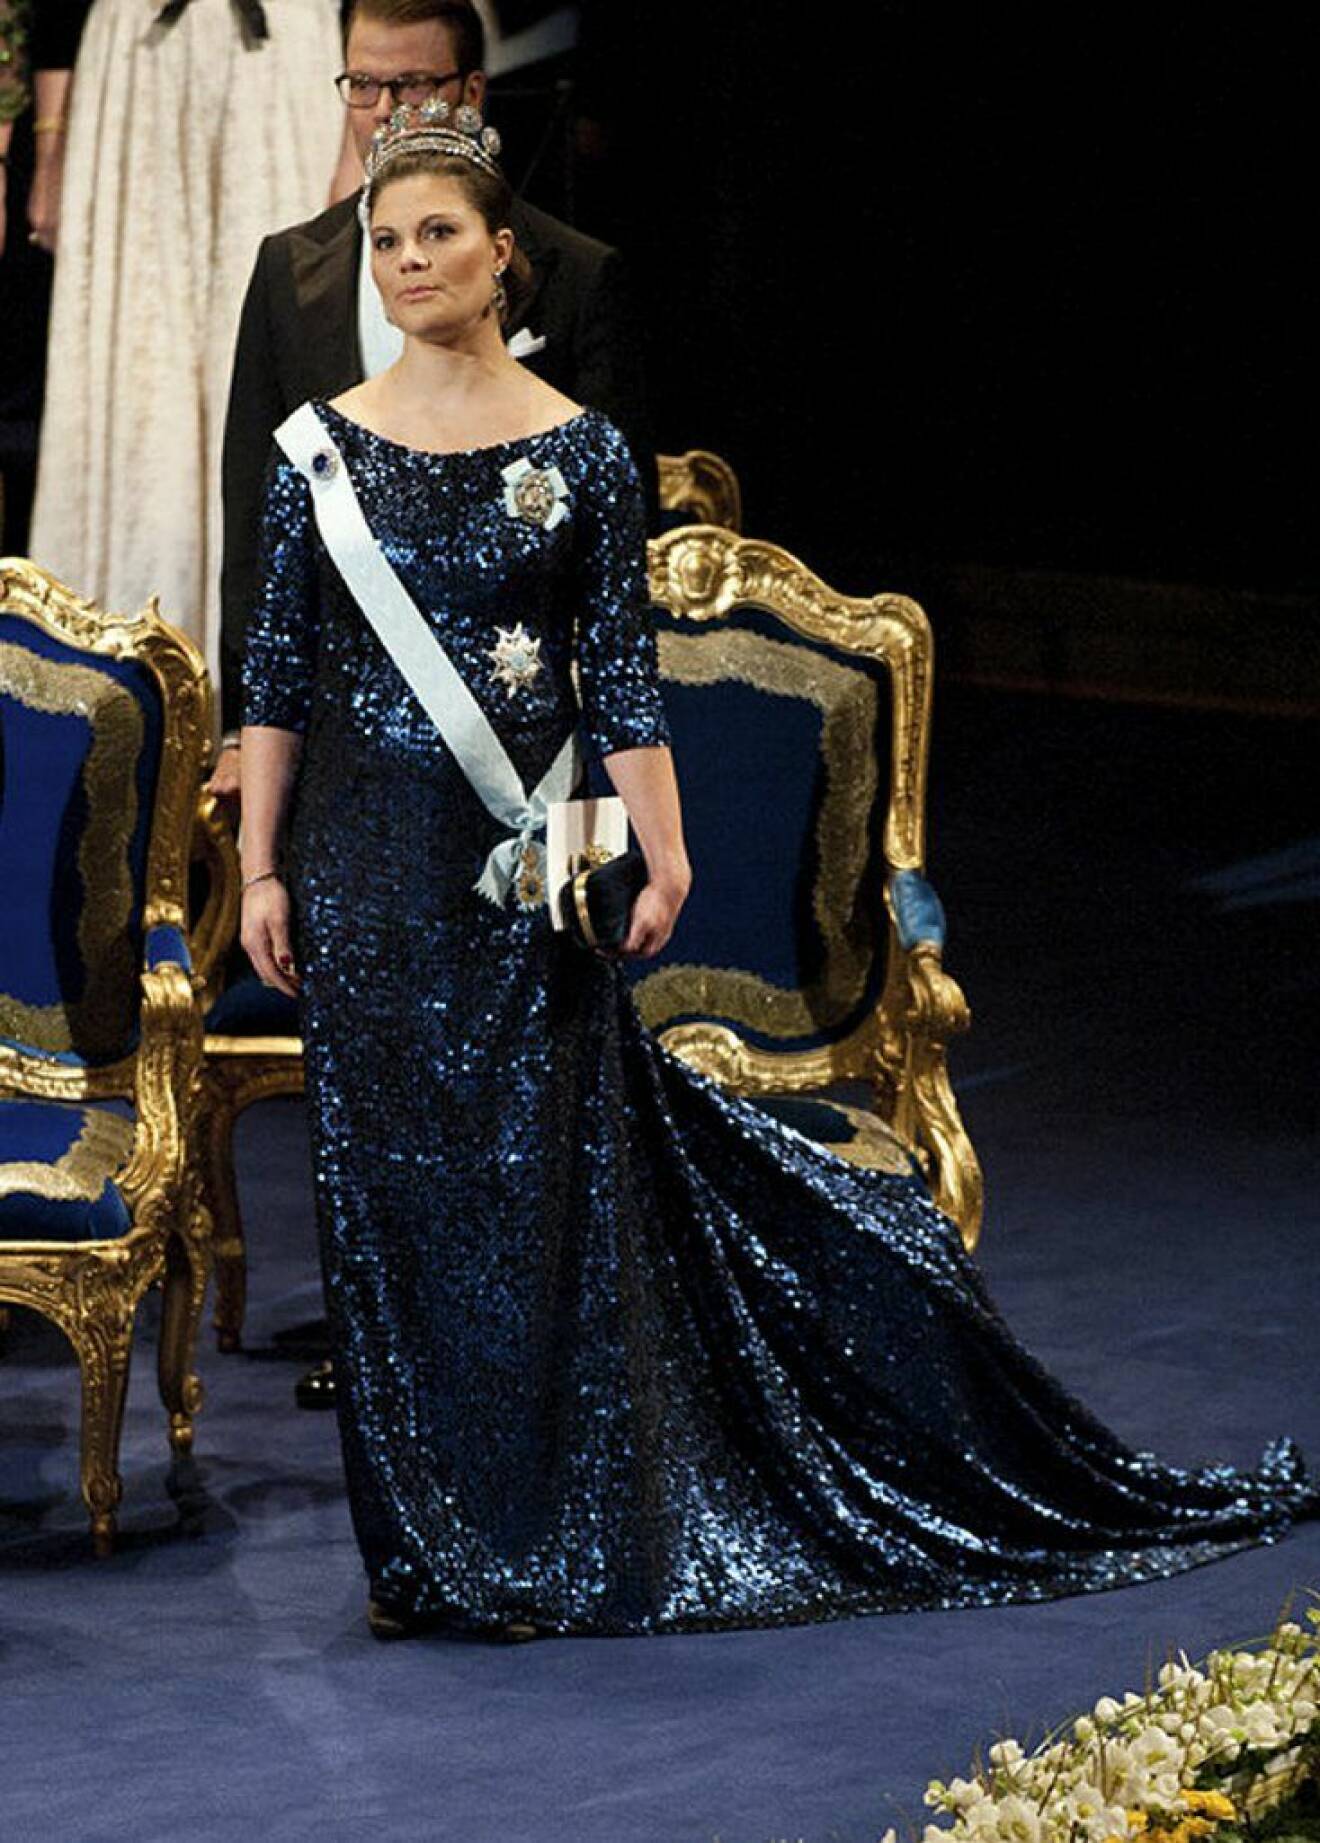 Kronprinsessan Victoria i en glittrig klänning av Pär Engsheden.